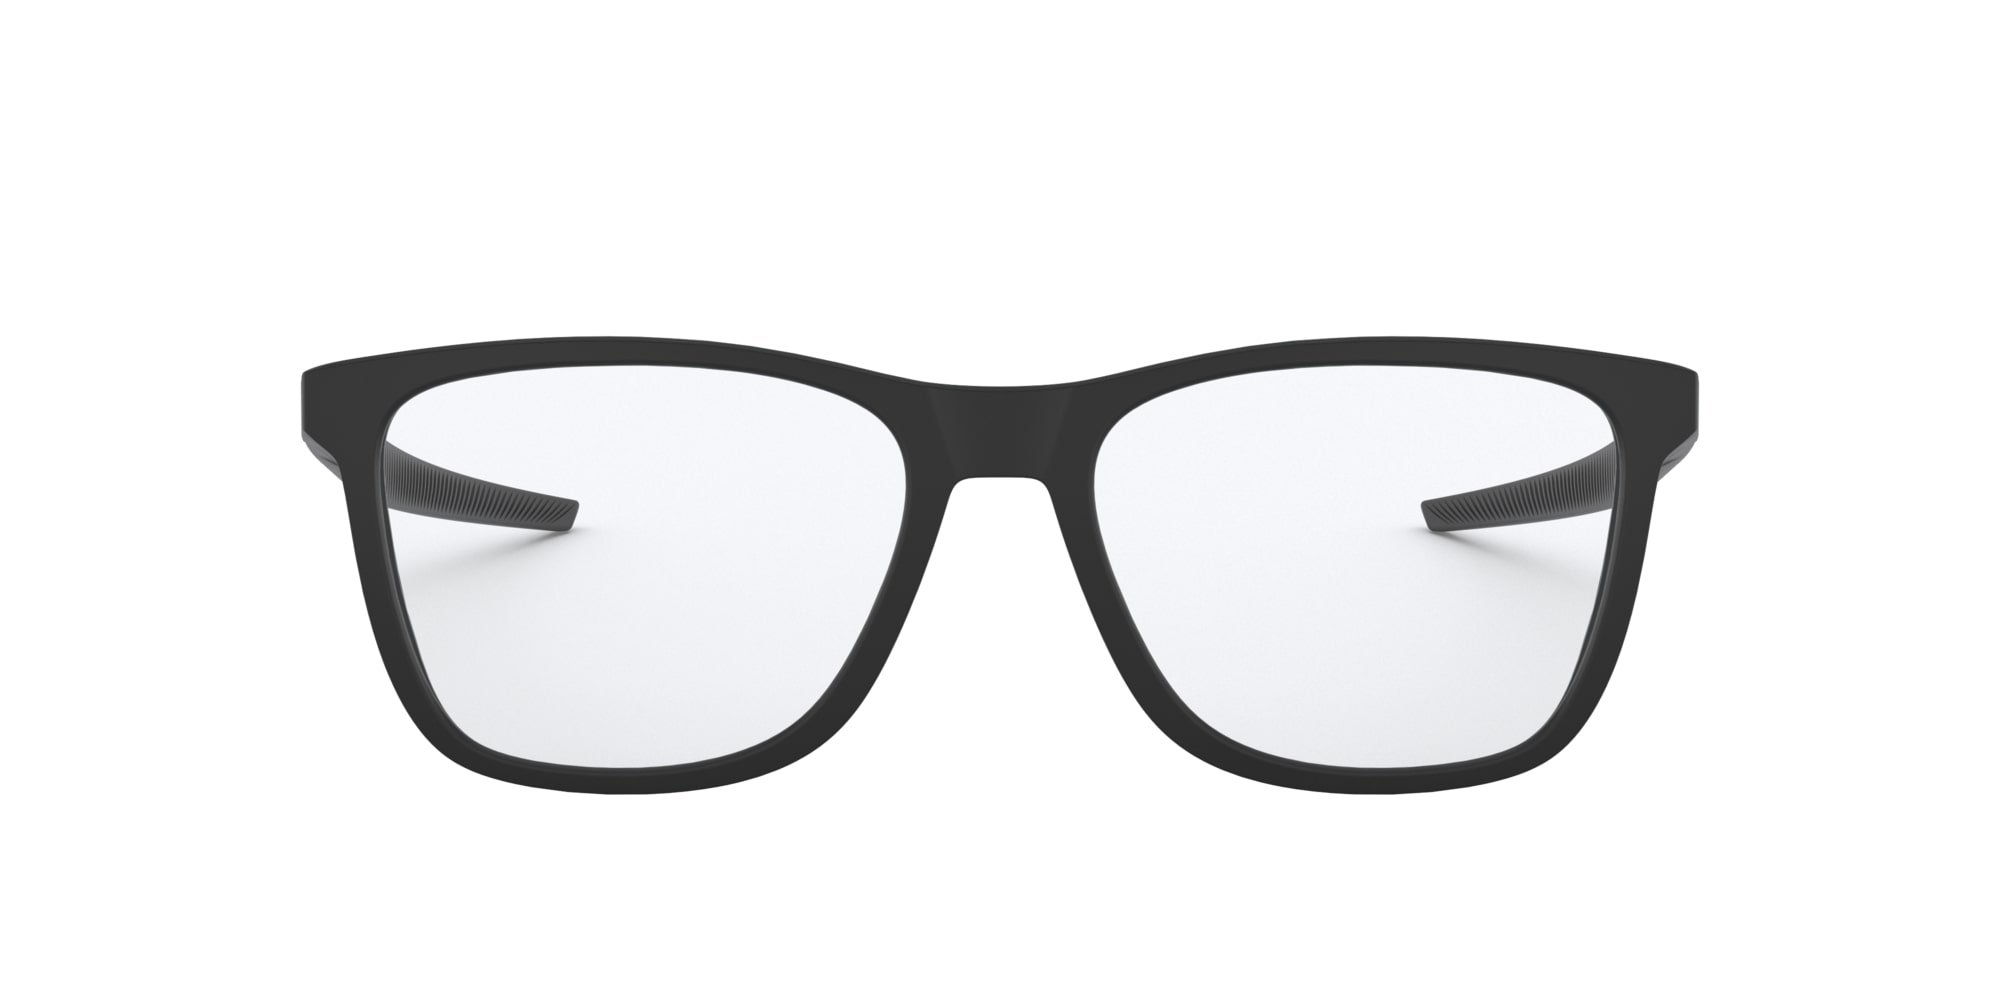 Das Bild zeigt die Korrektionsbrille OX8163 816301 von der Marke Oakley  in  schwarz satiniert.